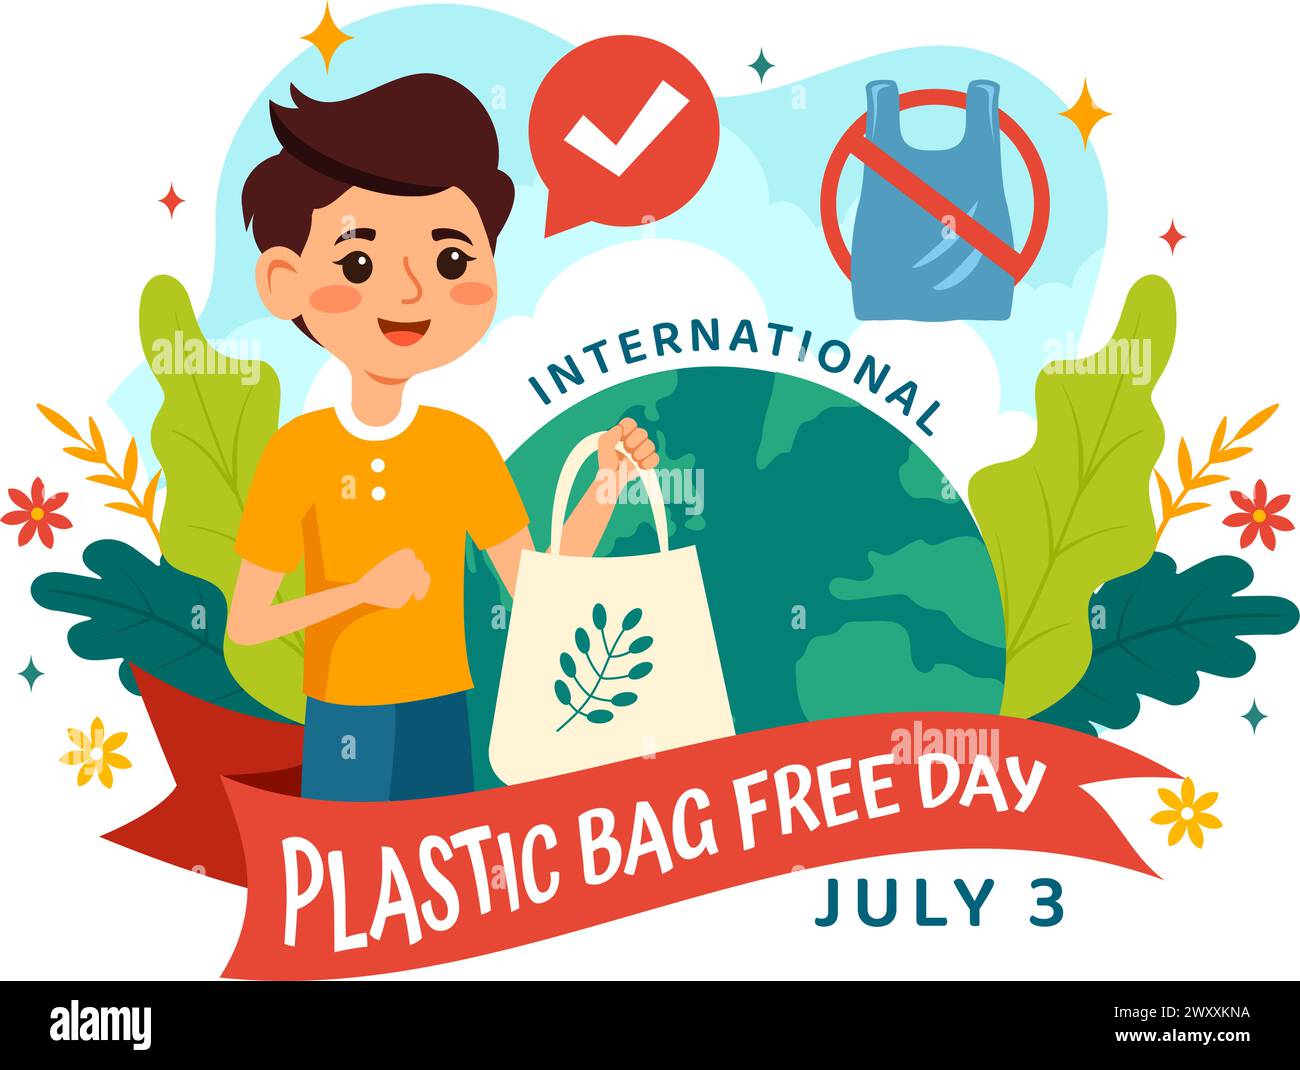 Internationale Plastiktüte Freie Tag Vektor-Illustration am 3. Juli mit Go Green, Save Earth und Ocean in Eco Lifestyle Flat Cartoon Hintergrund Stock Vektor